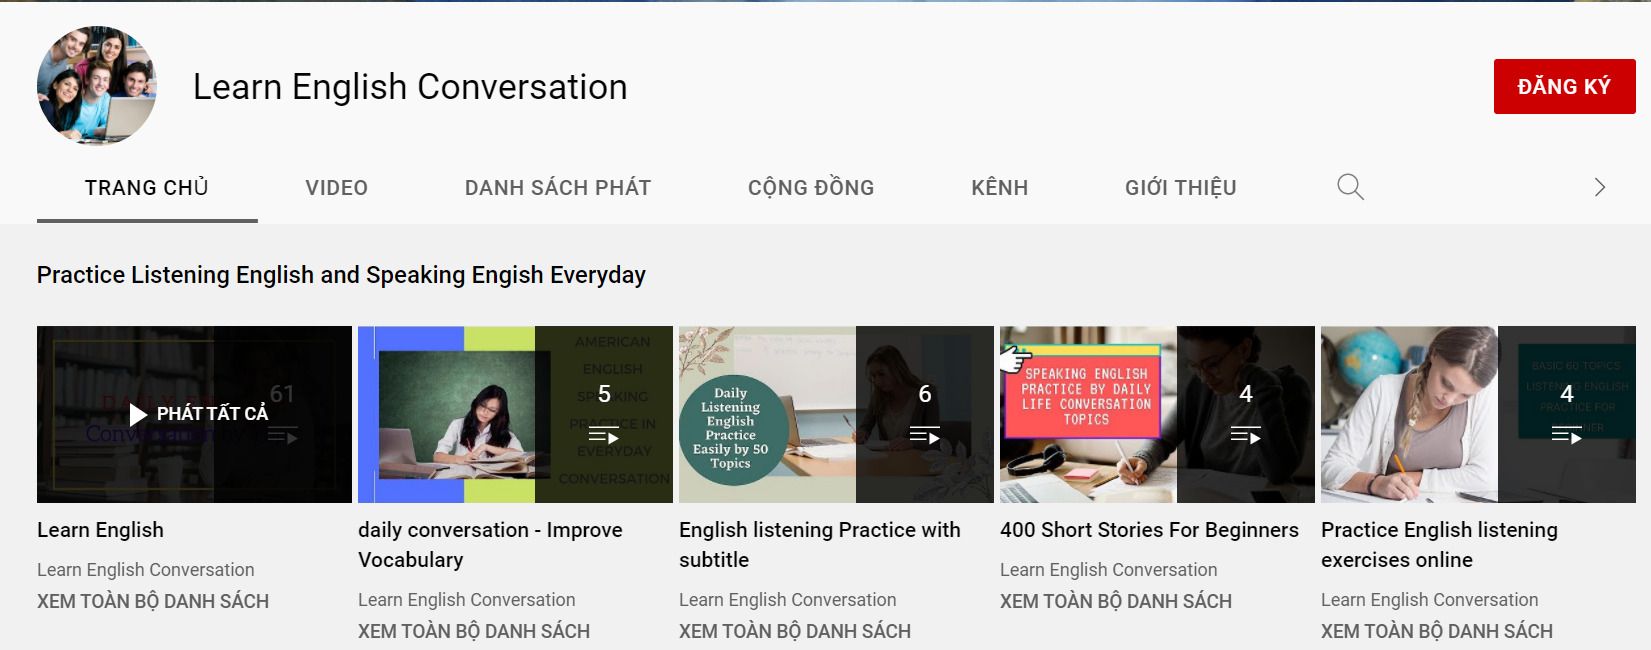 Series Learn English Conversation phù hợp với trình độ Beginners